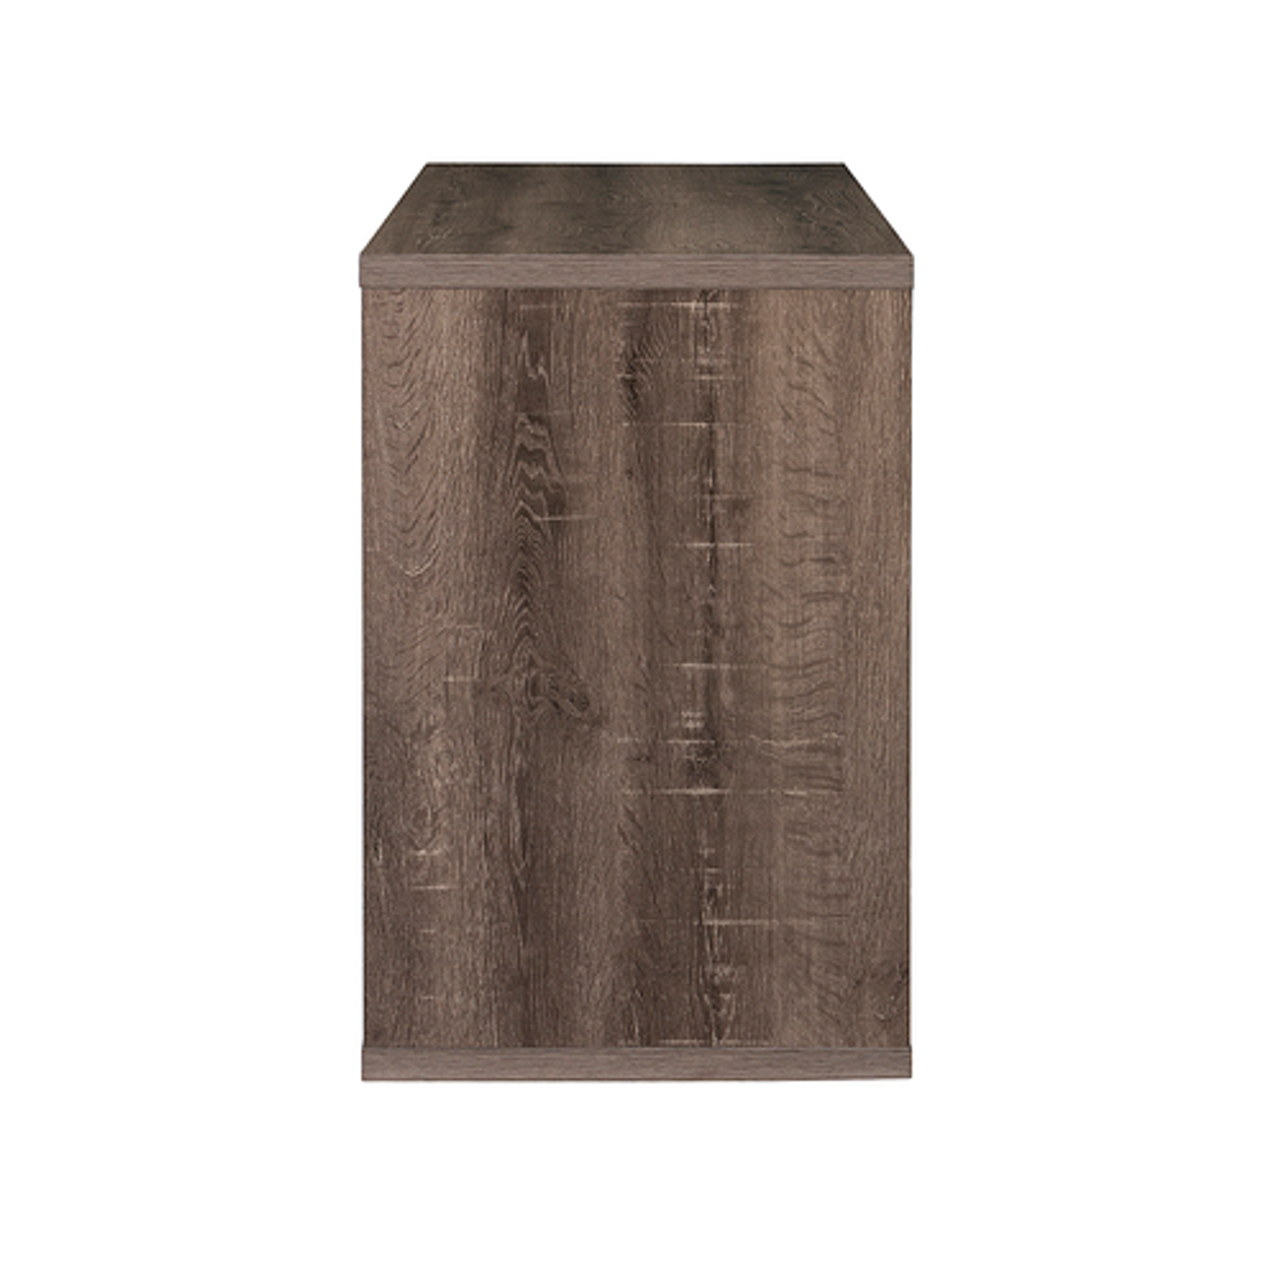 Linon Home Décor - Culver Two-Cube Desk - Gray